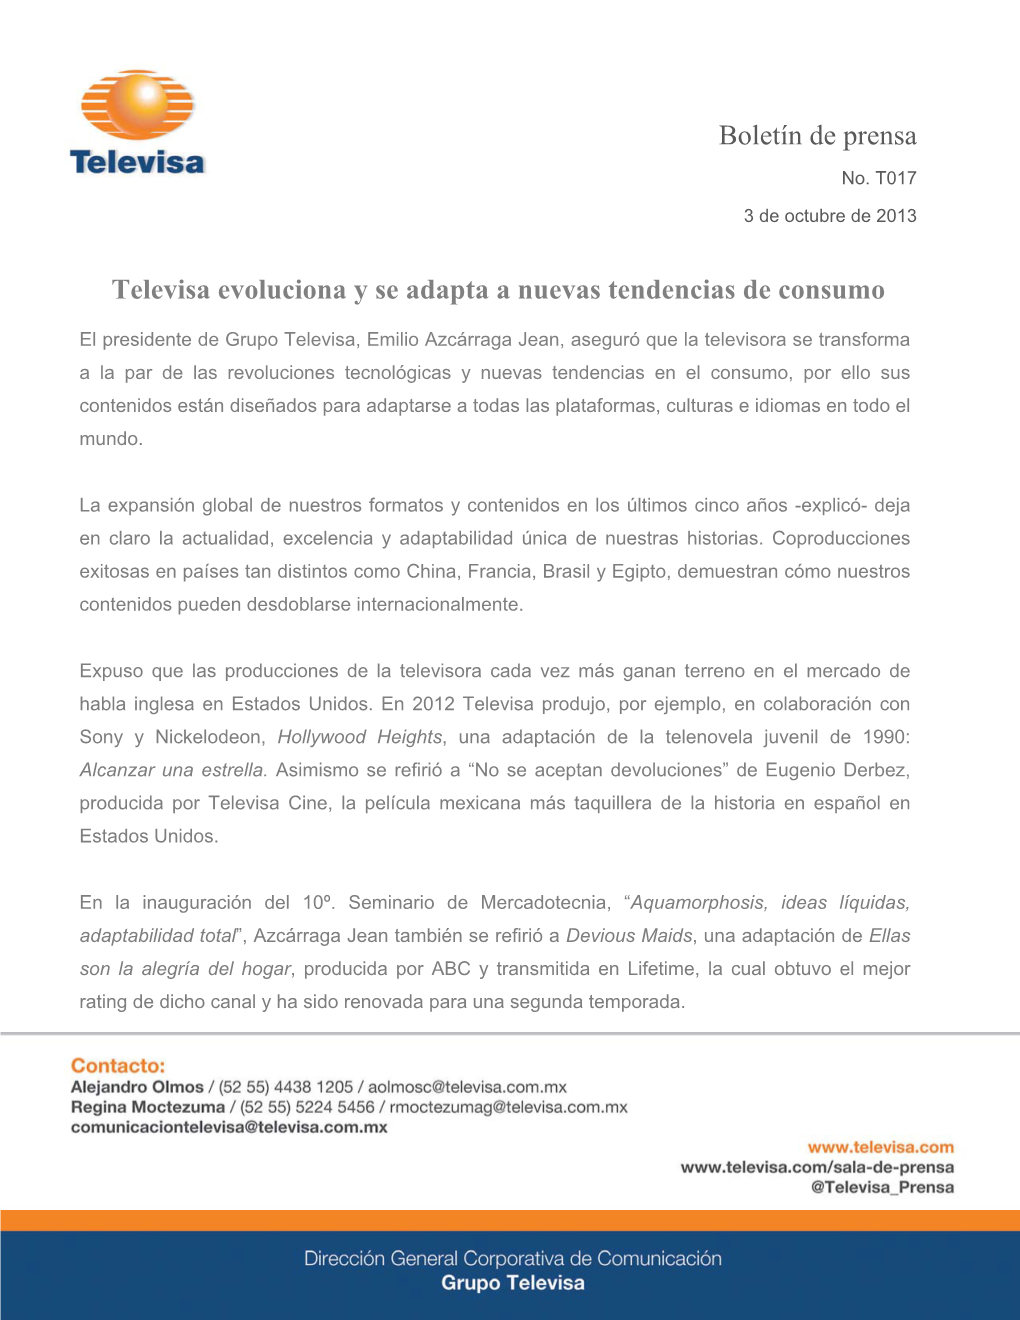 Televisa Evoluciona Y Se Adapta a Nuevas Tendencias De Consumo Boletín De Prensa